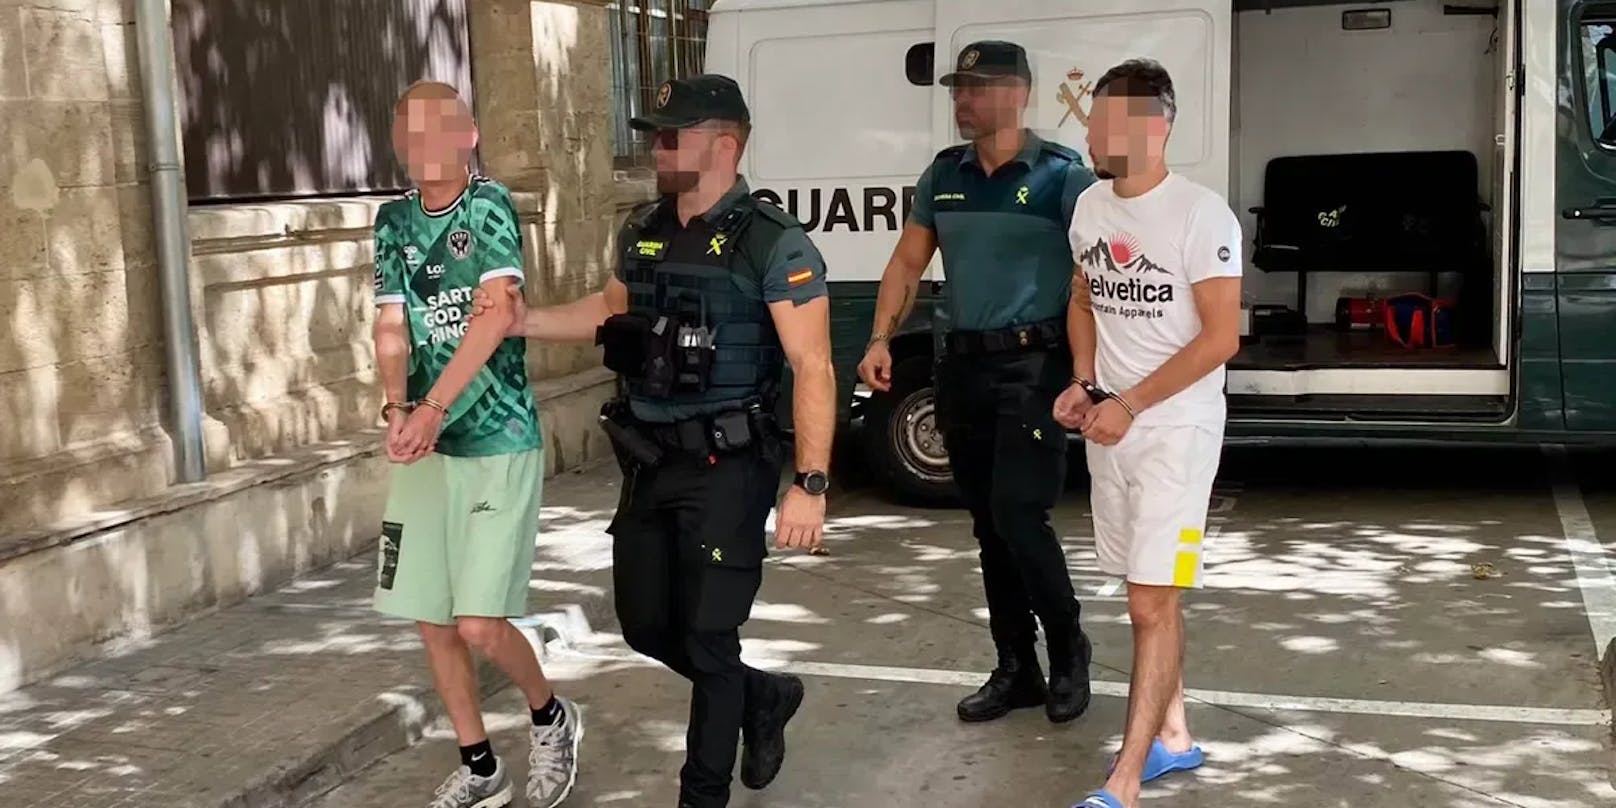 Sechs der mutmaßlichen Täter befinden sich derzeit in Spanien in U-Haft, zwei weitere wurden vor einigen Tagen in Frankreich verhaftet.